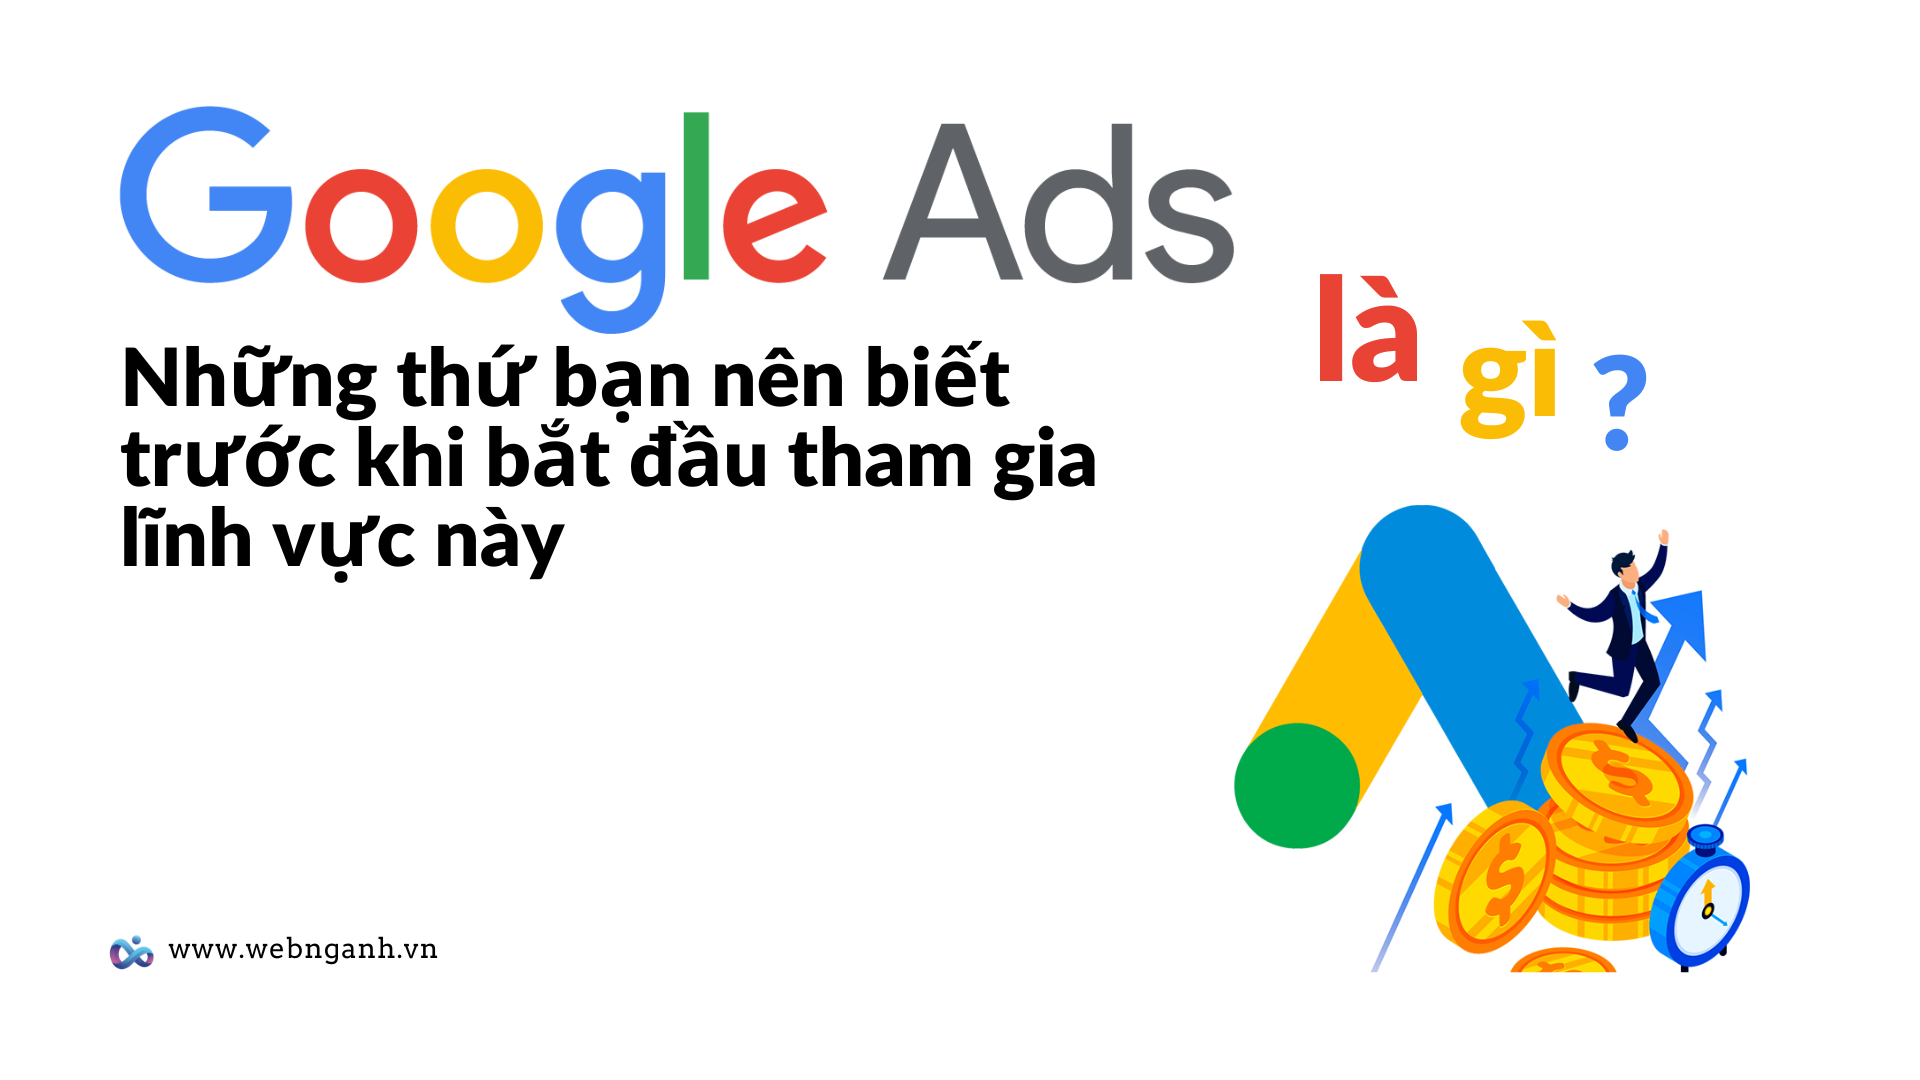 Google Ads là gì ? Những thứ bạn nên biết trước khi bắt đầu tham gia lĩnh vực này